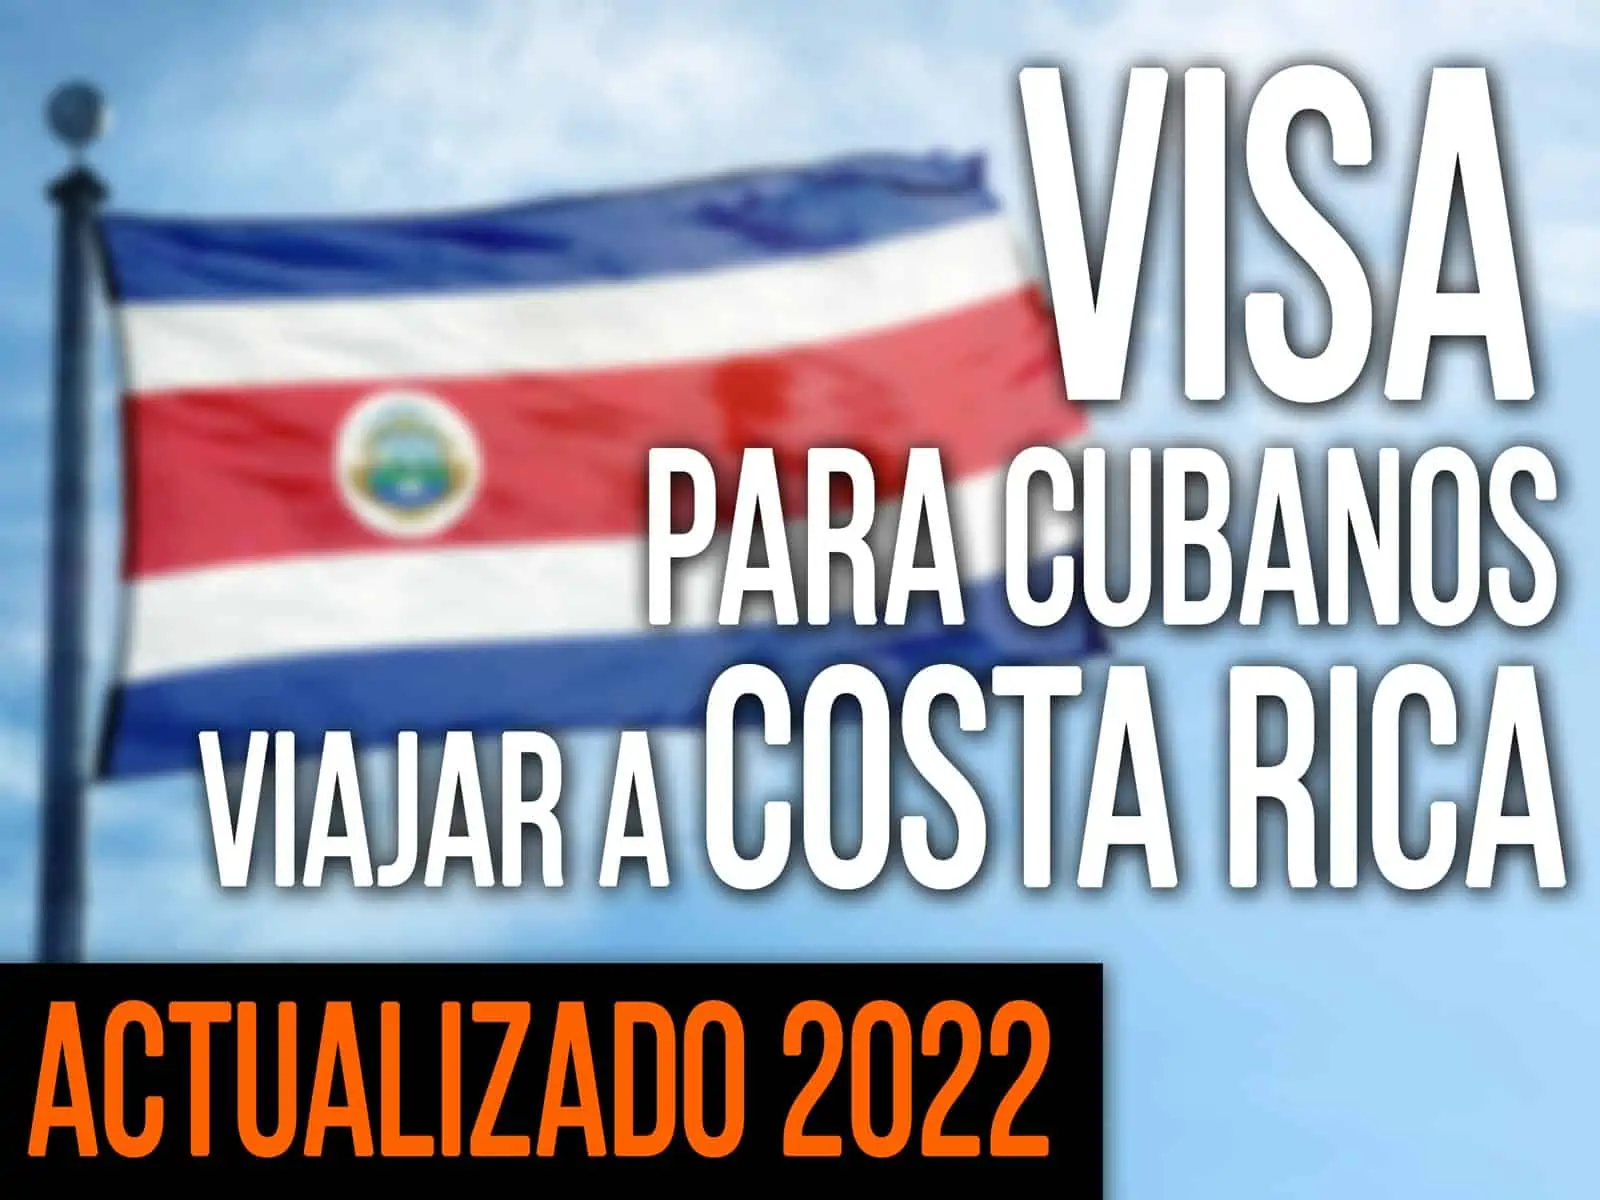 Visa para Cubanos Viajar a Costa Rica